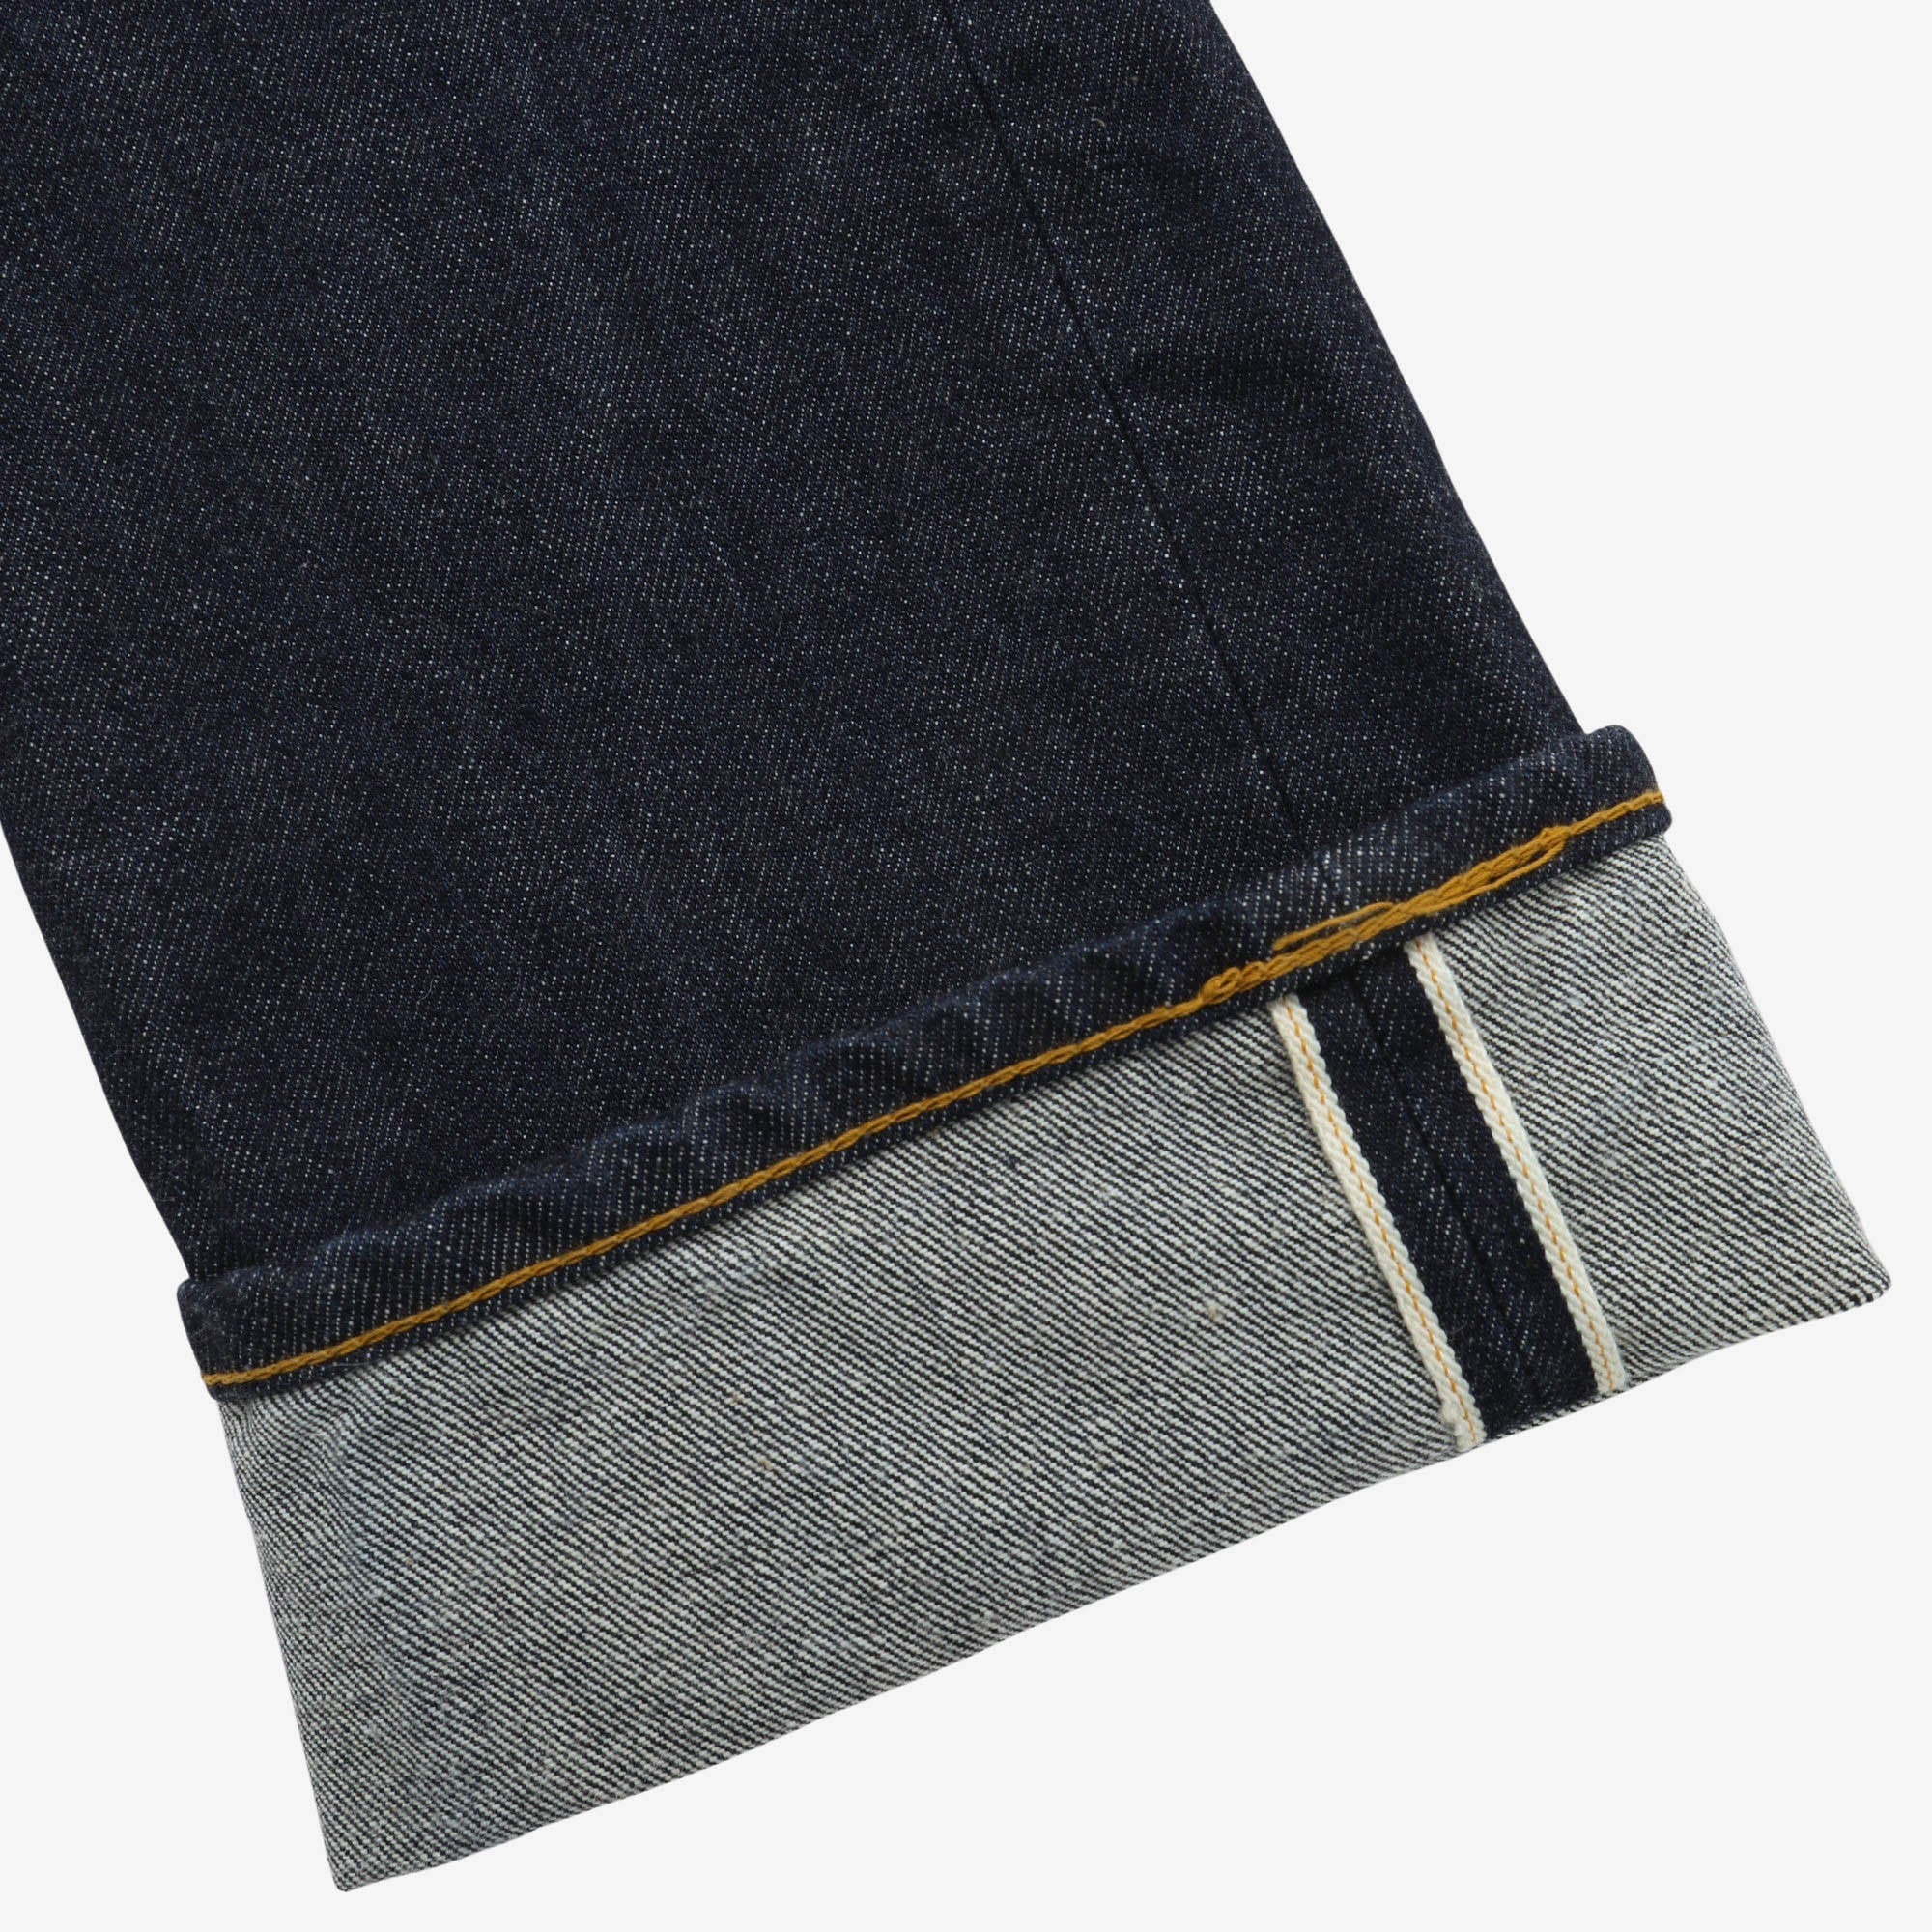 712 Denim Jeans One Wash (Fits 33W x 27L)